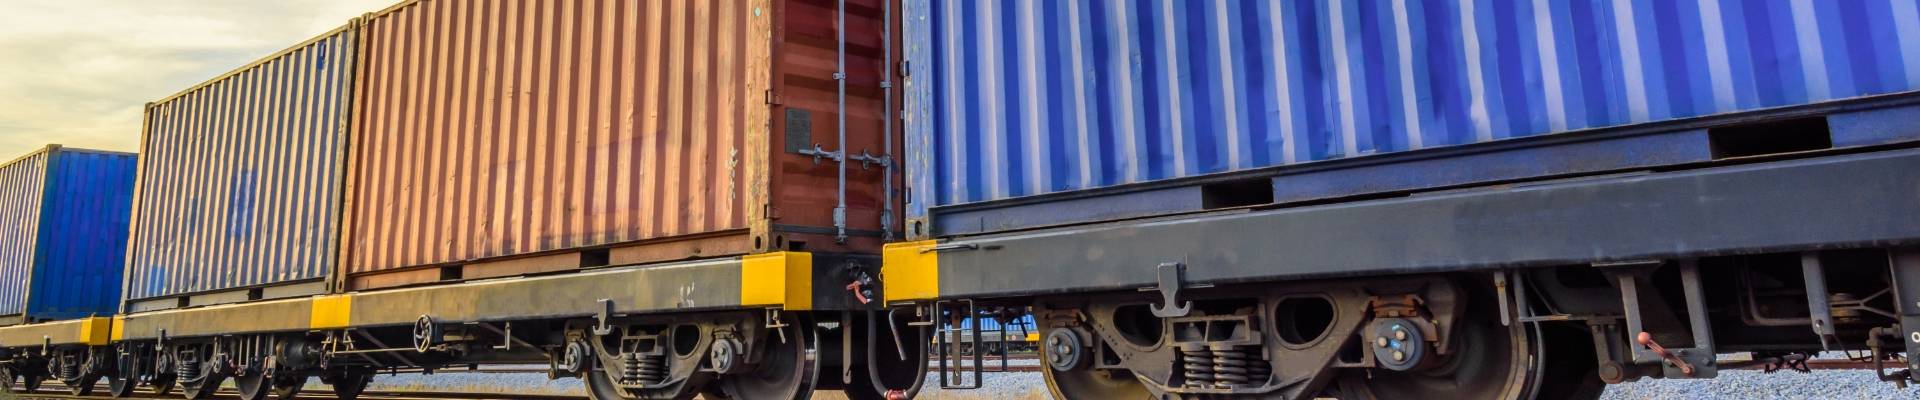 Container auf Güterwagen